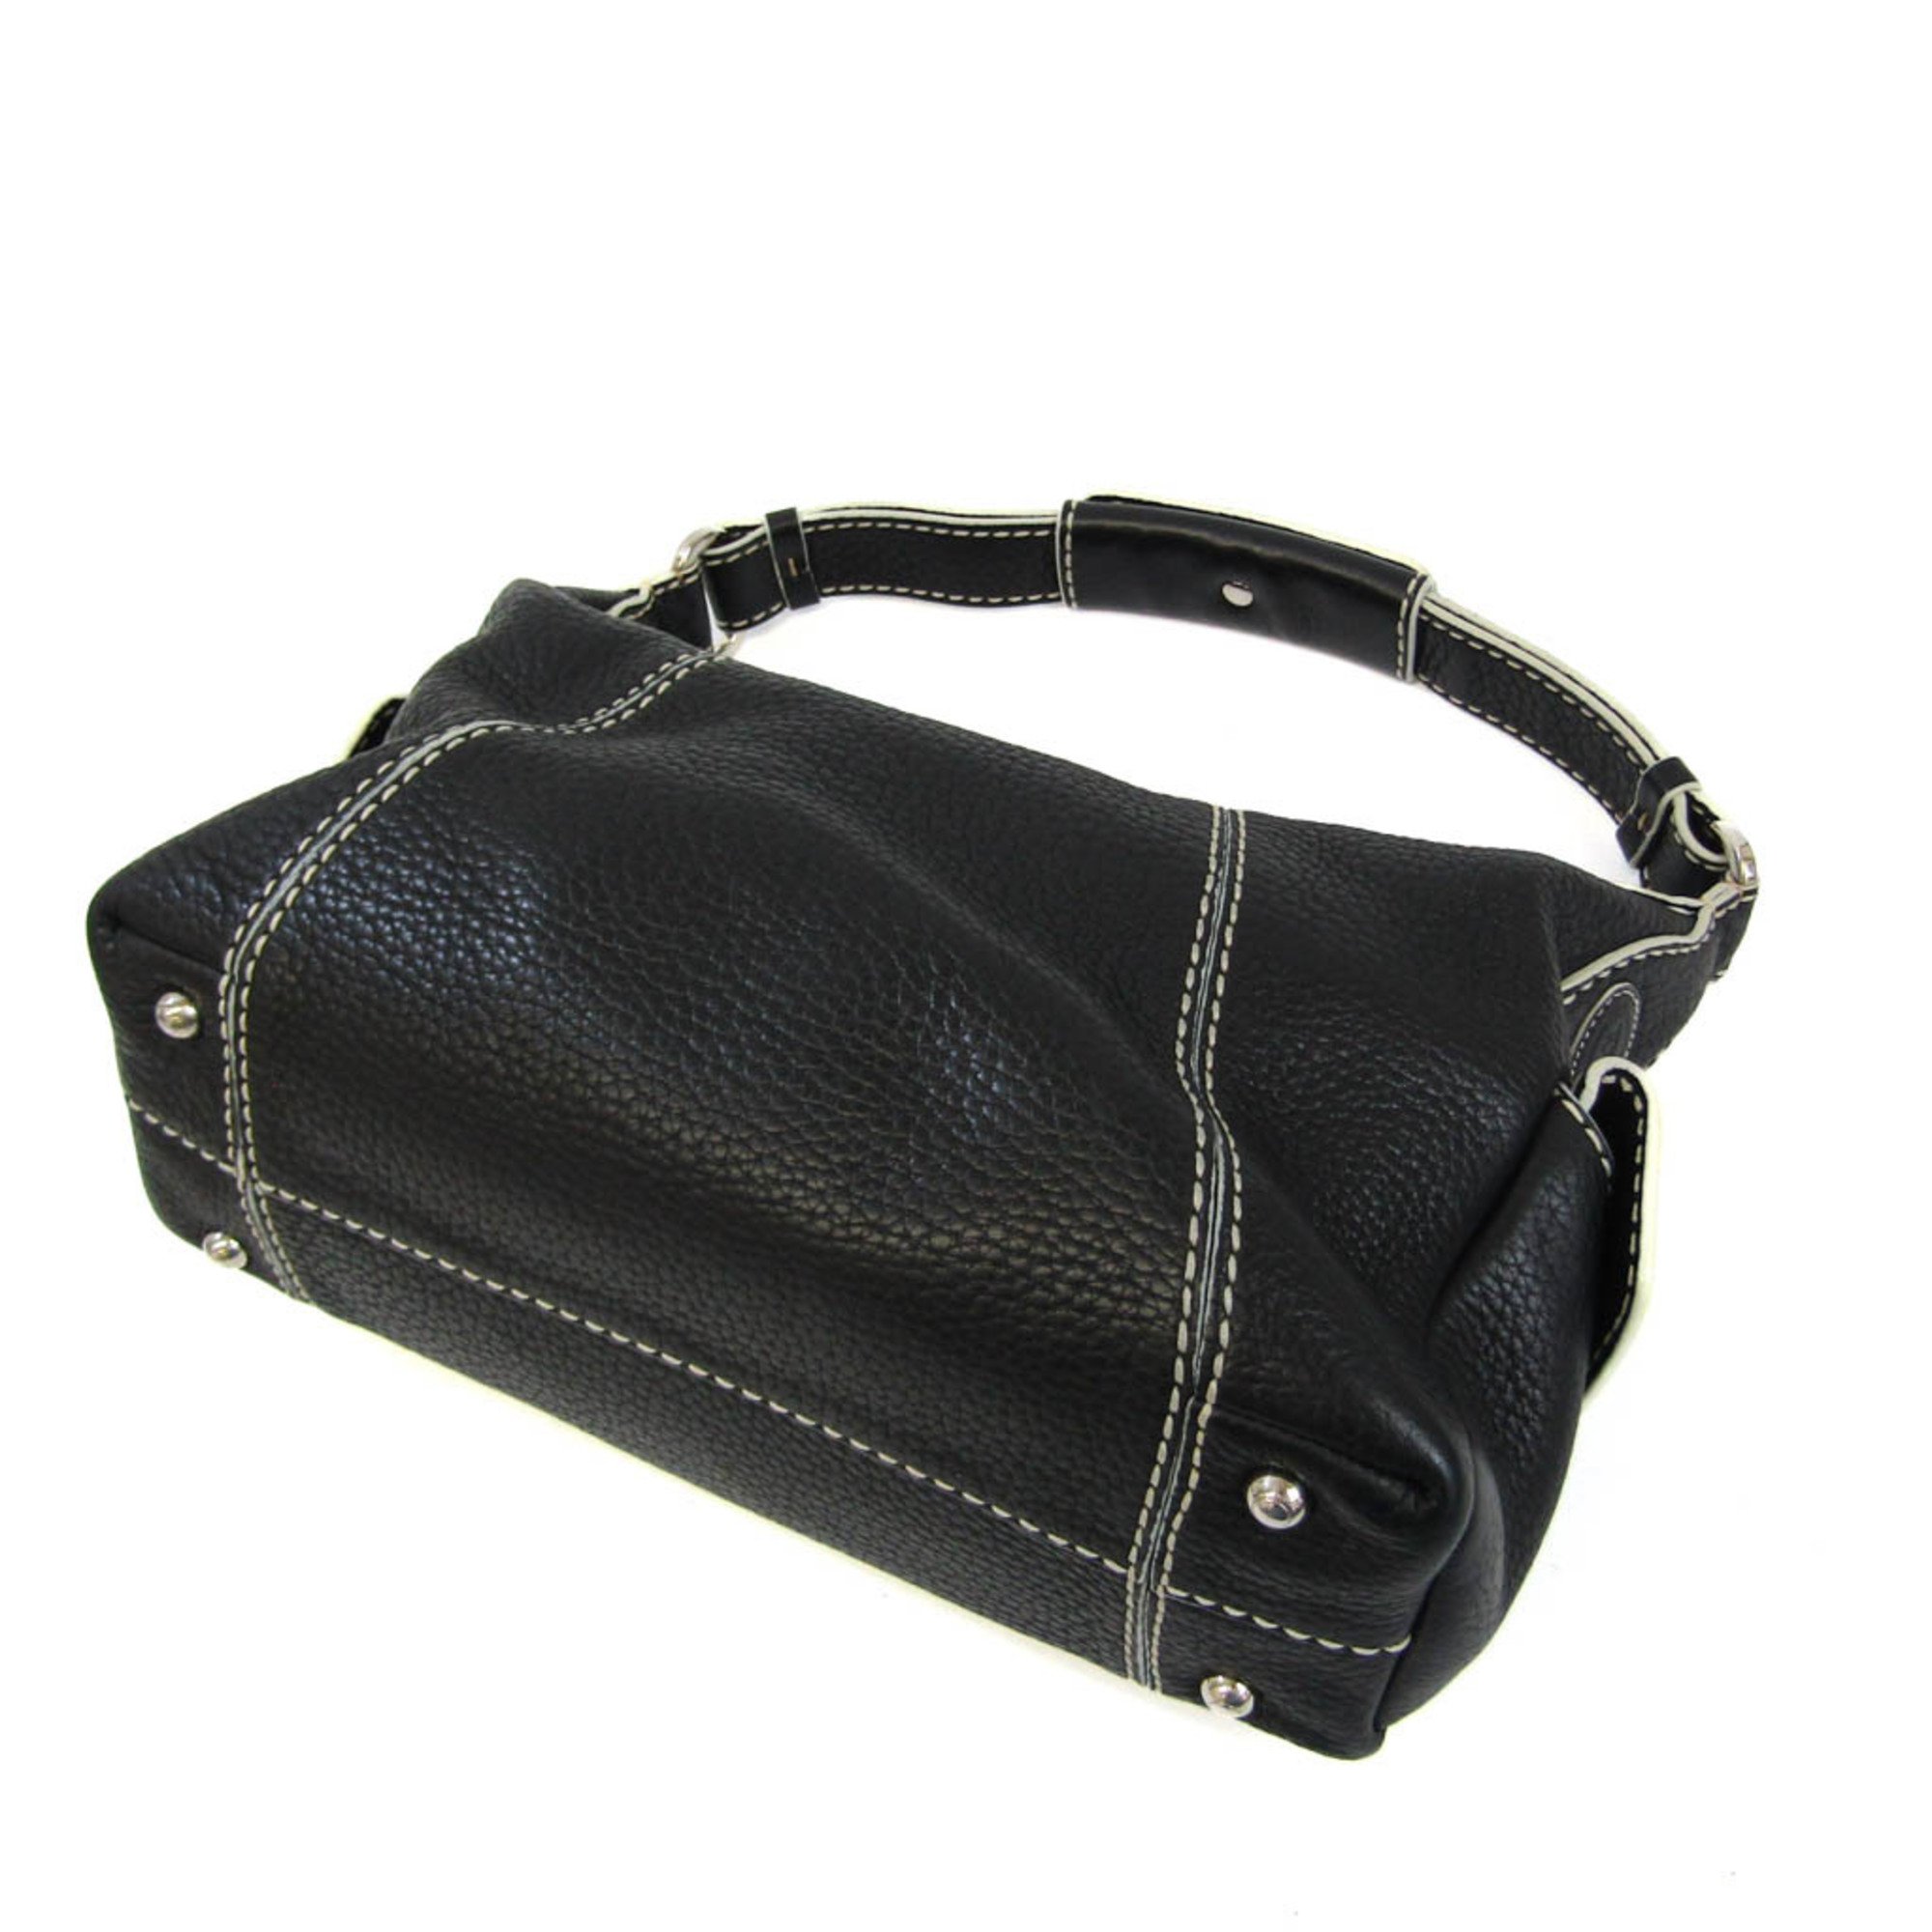 Tod's Women's Leather Shoulder Bag Black